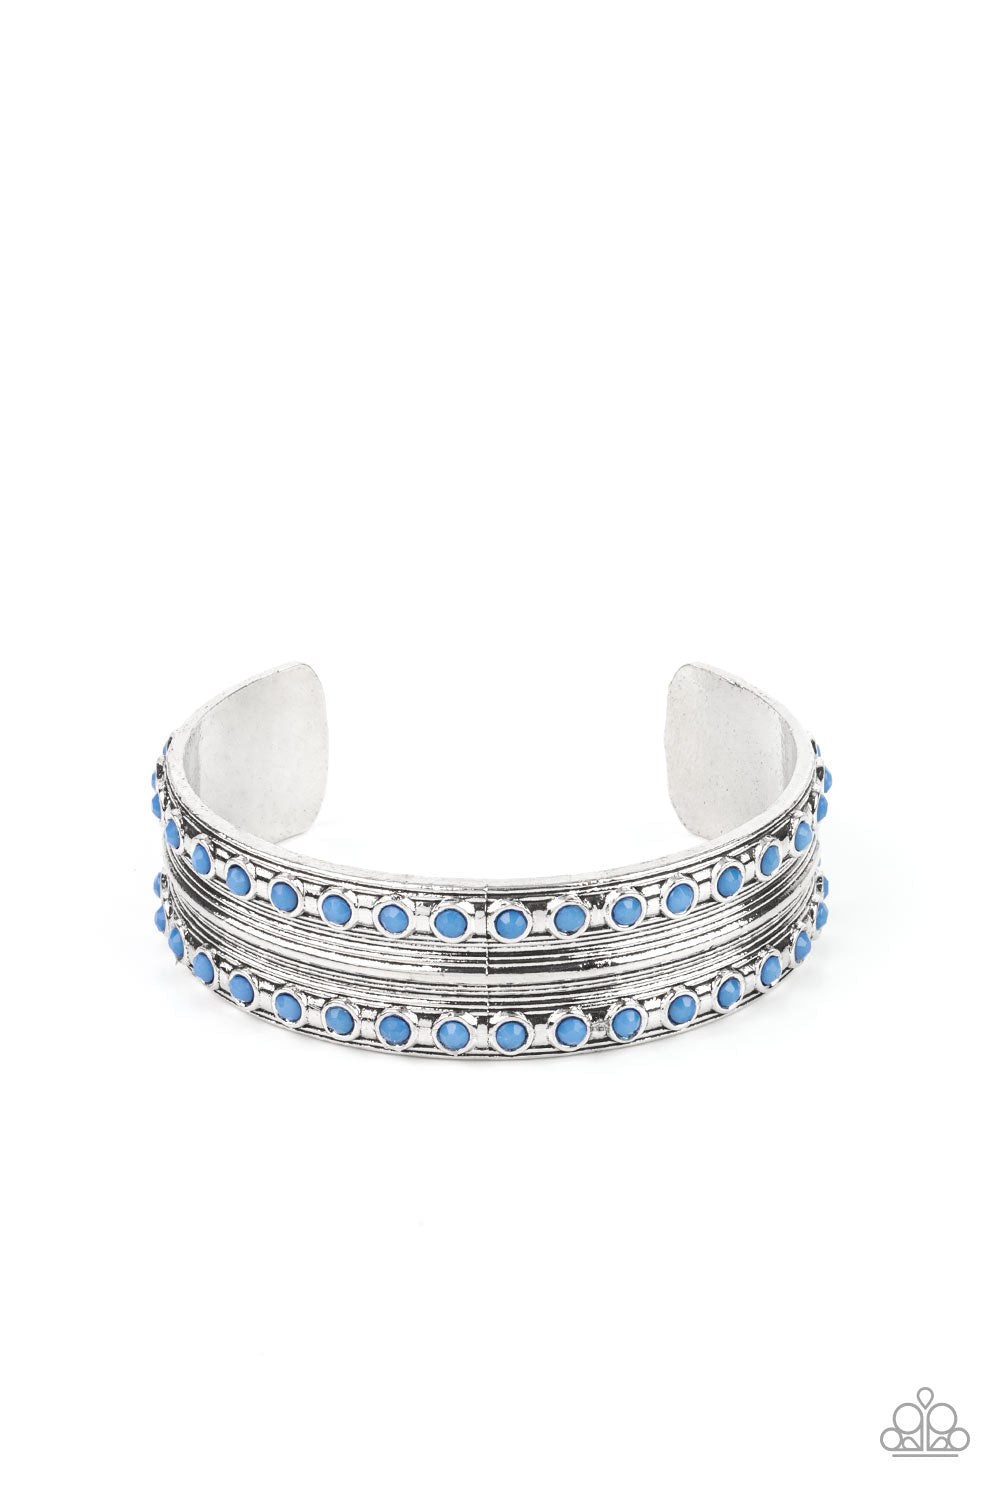 Costa Rica Retreat Blue &amp; Silver Cuff Bracelet - Paparazzi Accessories- lightbox - CarasShop.com - $5 Jewelry by Cara Jewels